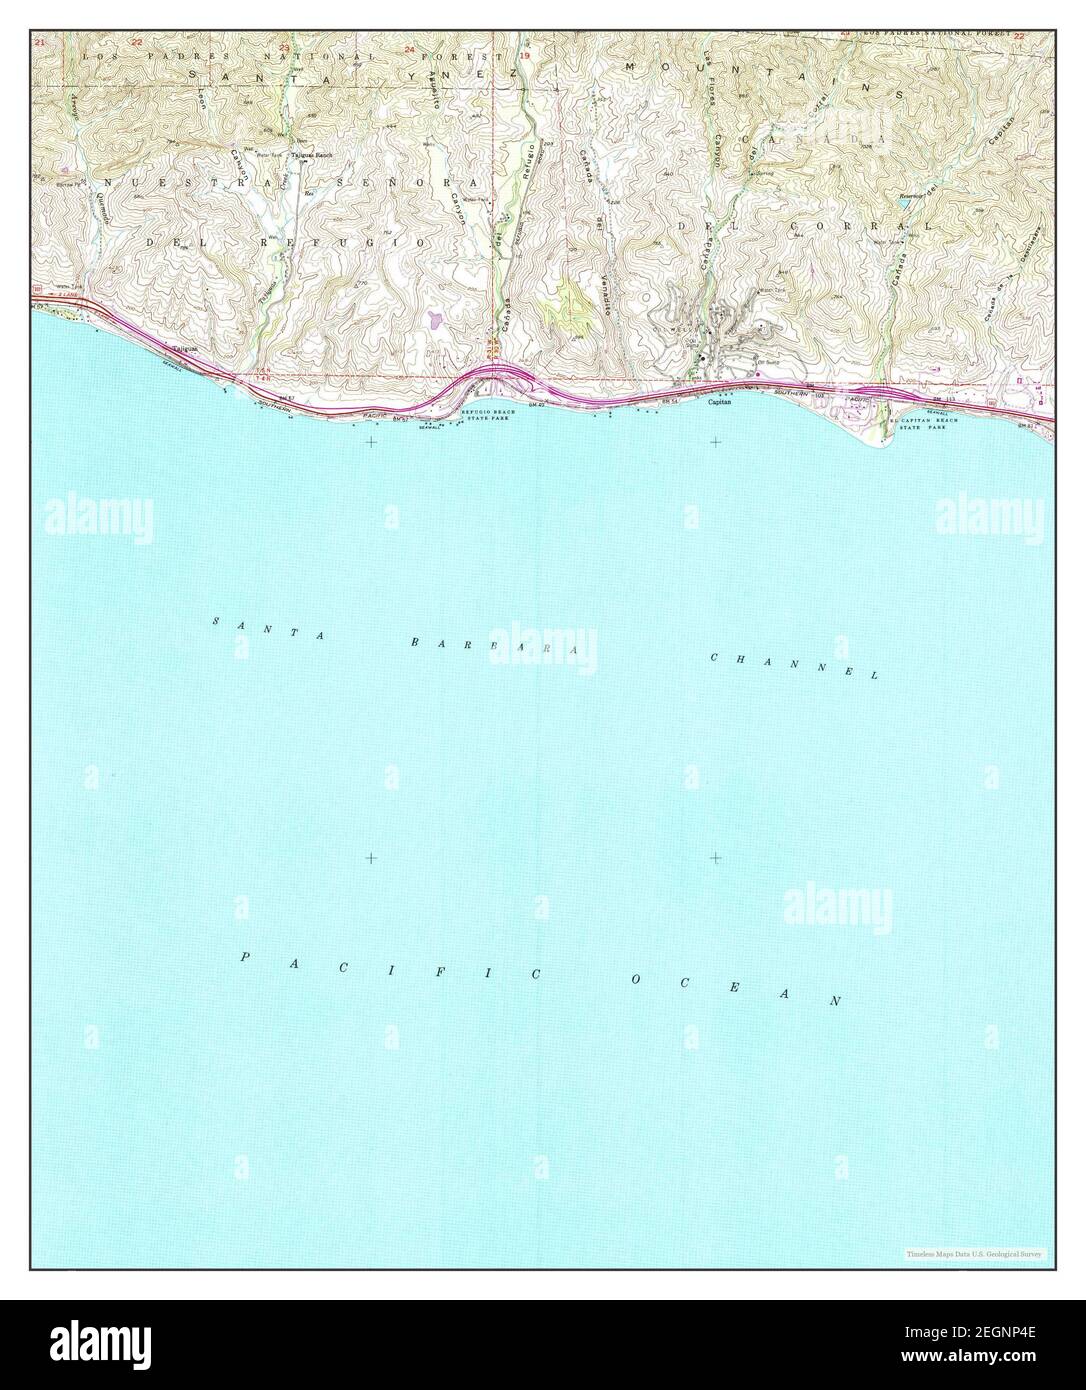 Tajiguas, California, Karte 1953, 1:24000, Vereinigte Staaten von Amerika von Timeless Maps, Daten U.S. Geological Survey Stockfoto